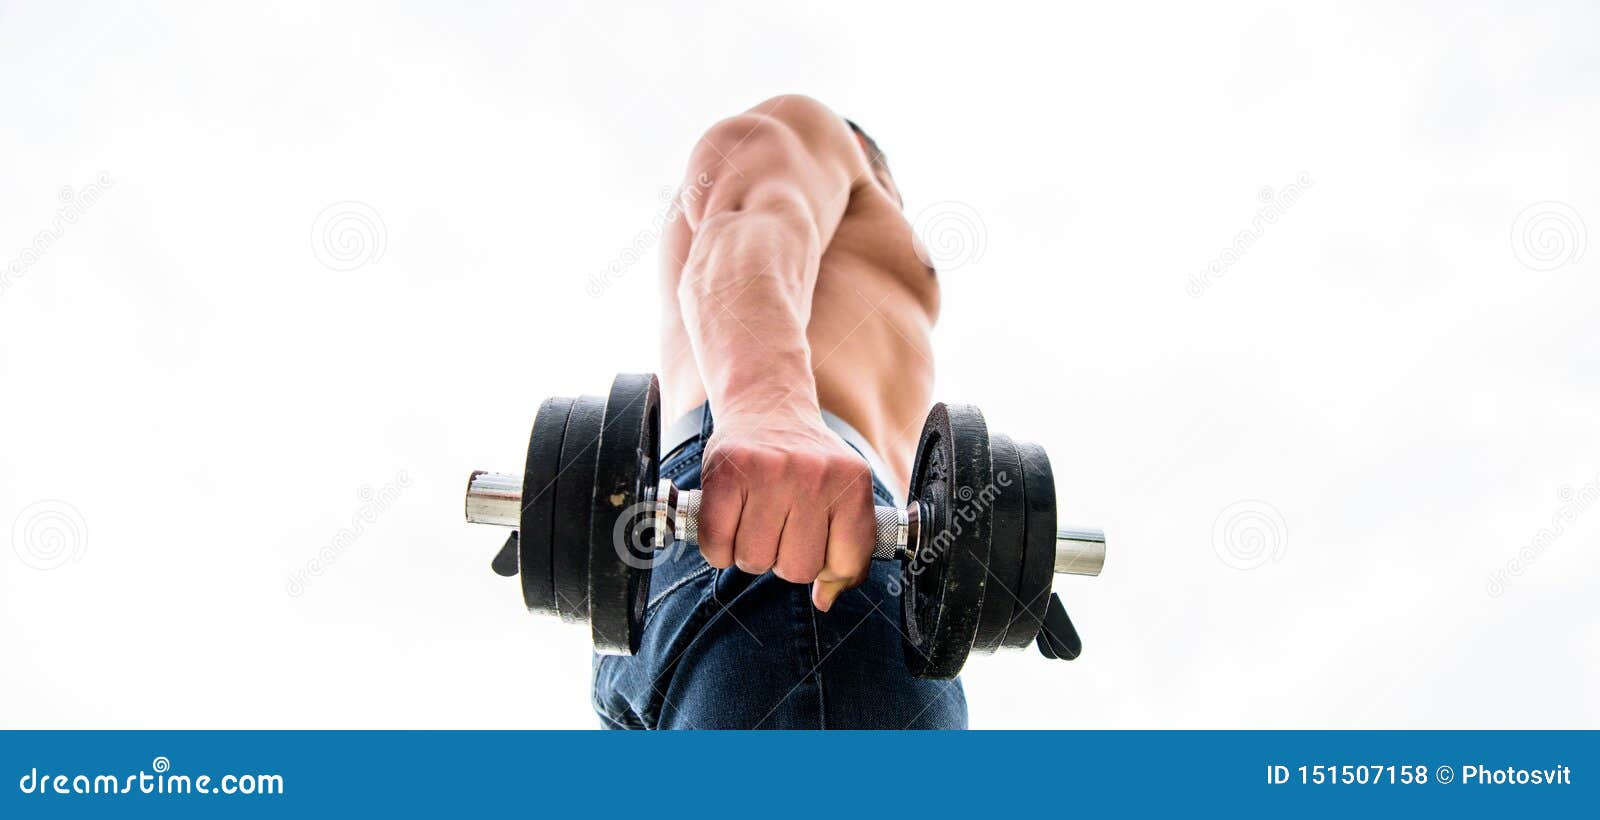 10 leistungsstarke Tipps, die Ihnen helfen, muskelaufbau ohne steroide besser zu machen